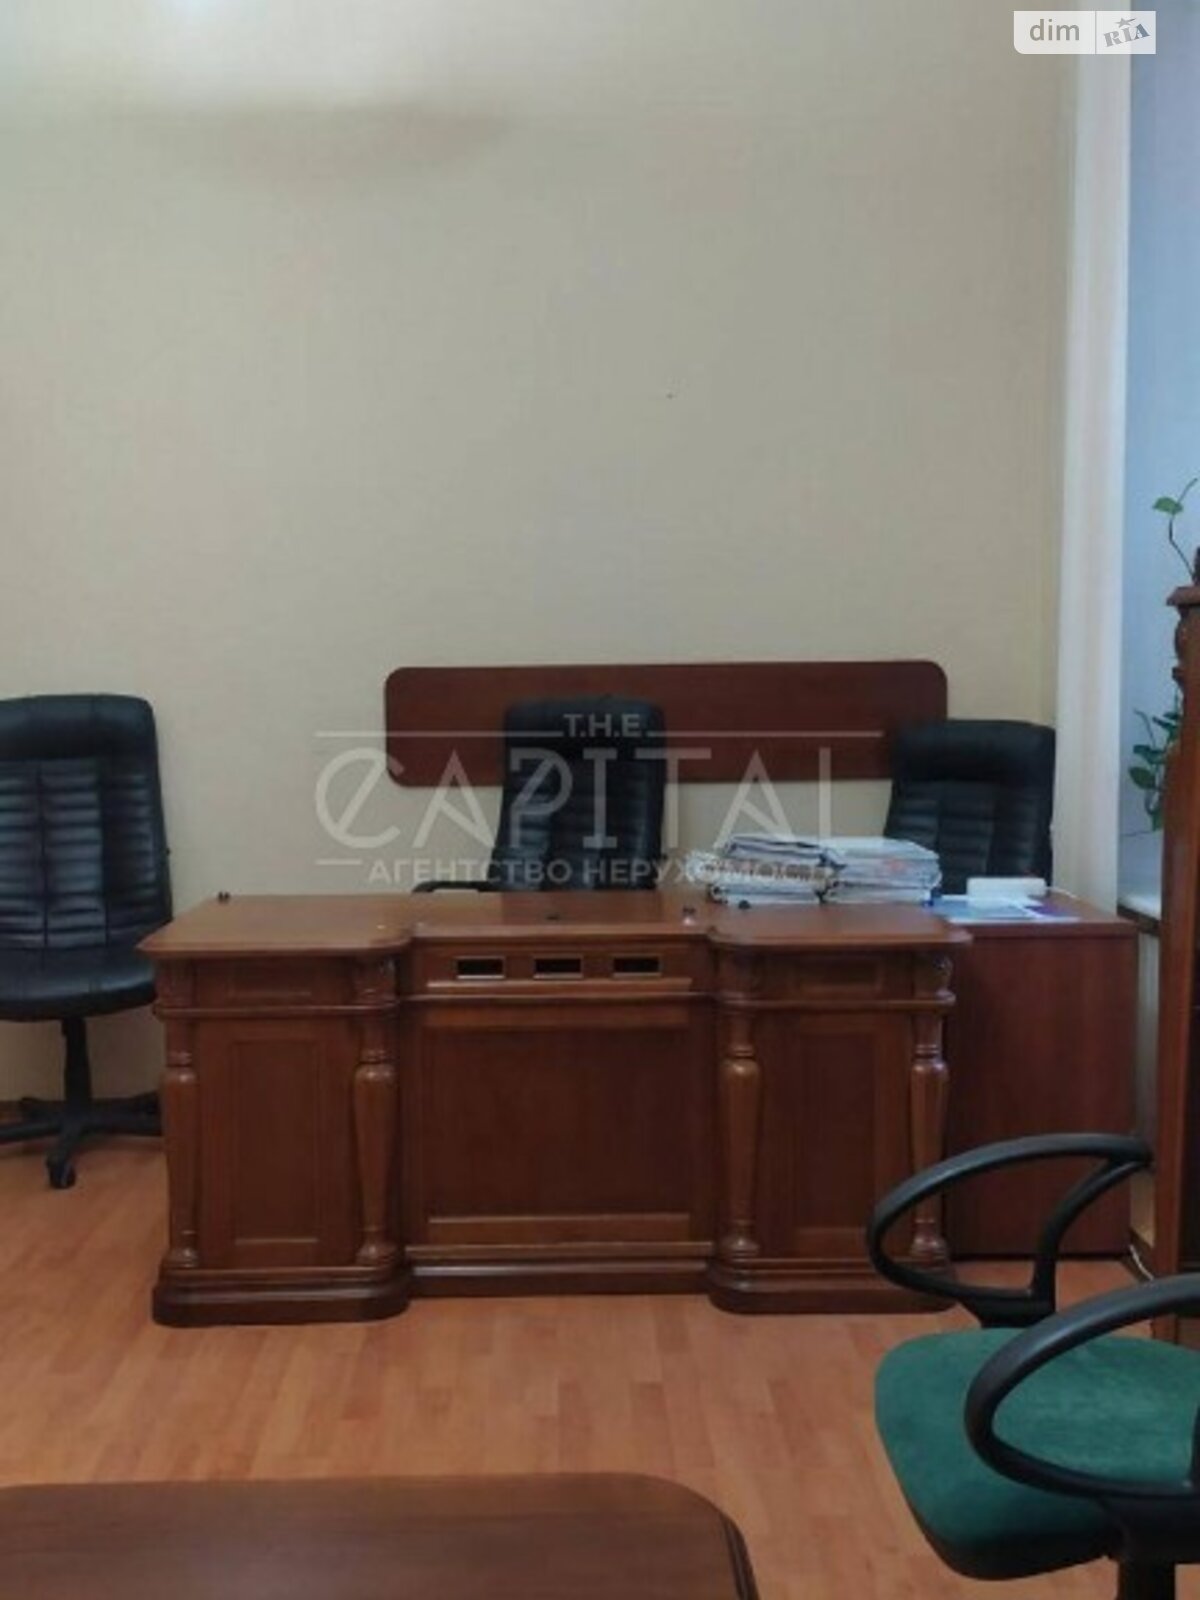 Аренда офисного помещения в Киеве, Большая Житомирская улица, помещений - 6, этаж - 2 фото 1